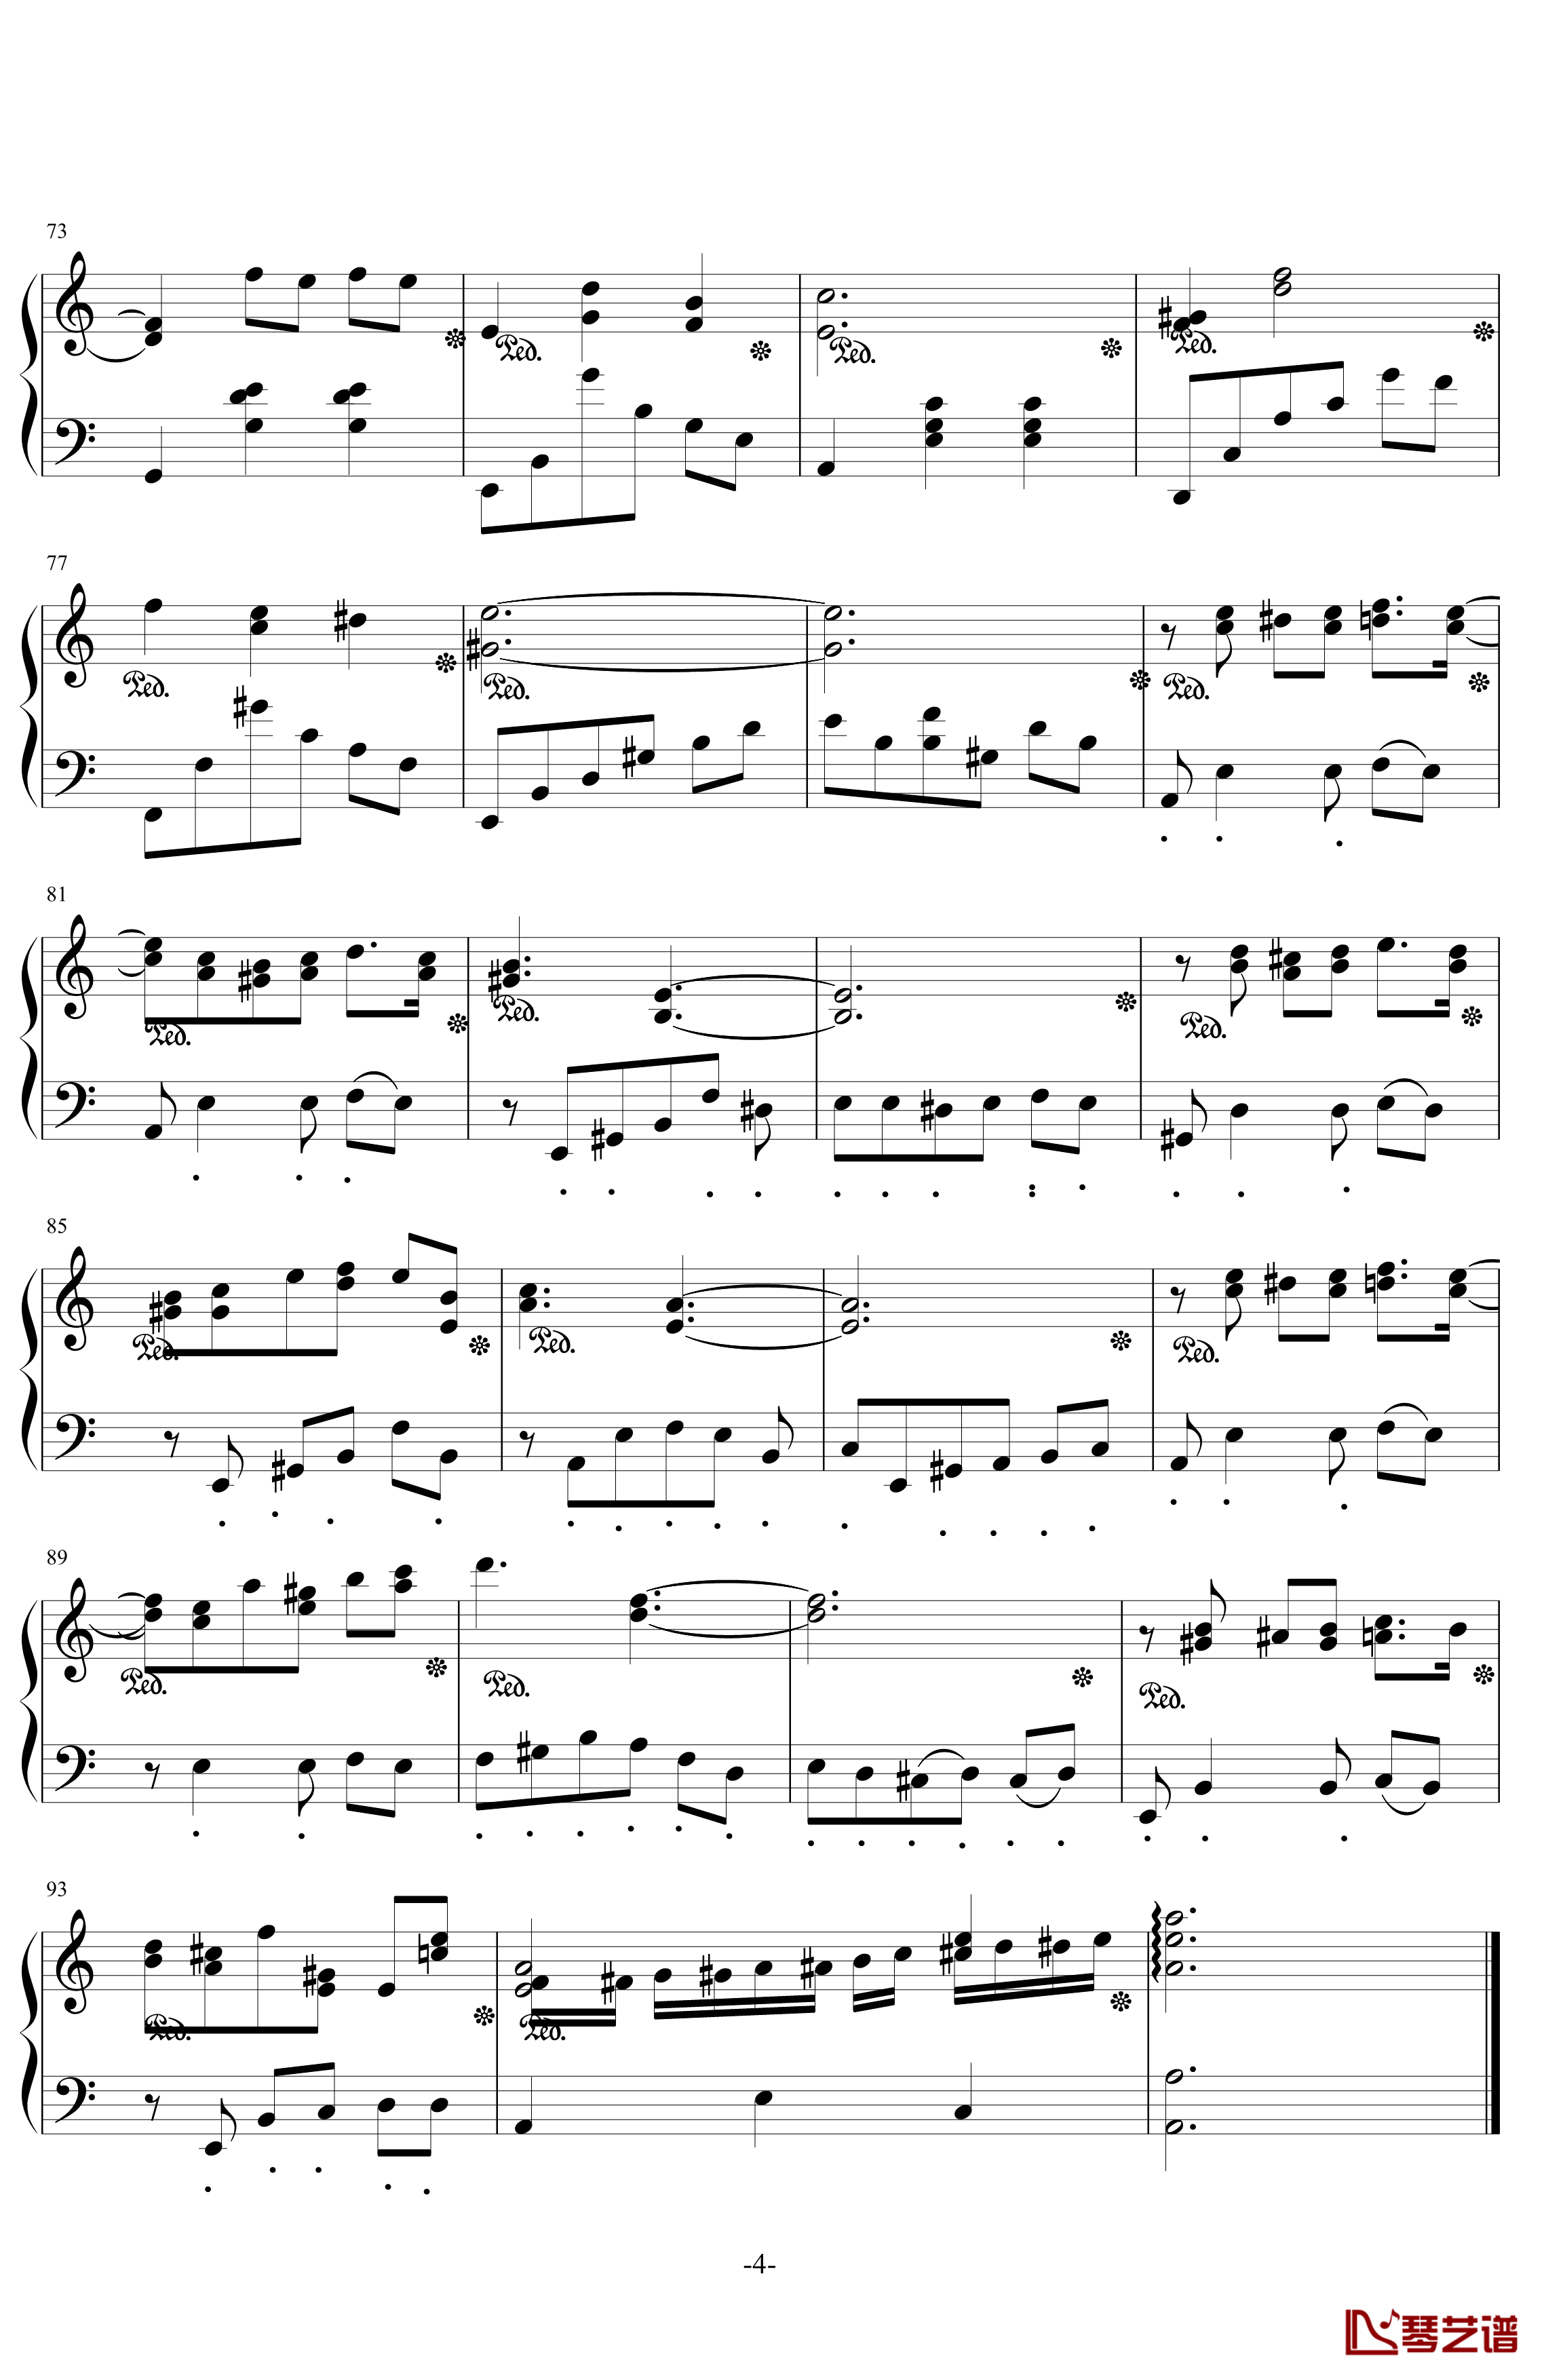 写给自己的Magic Waltz钢琴谱-liuzhuan4